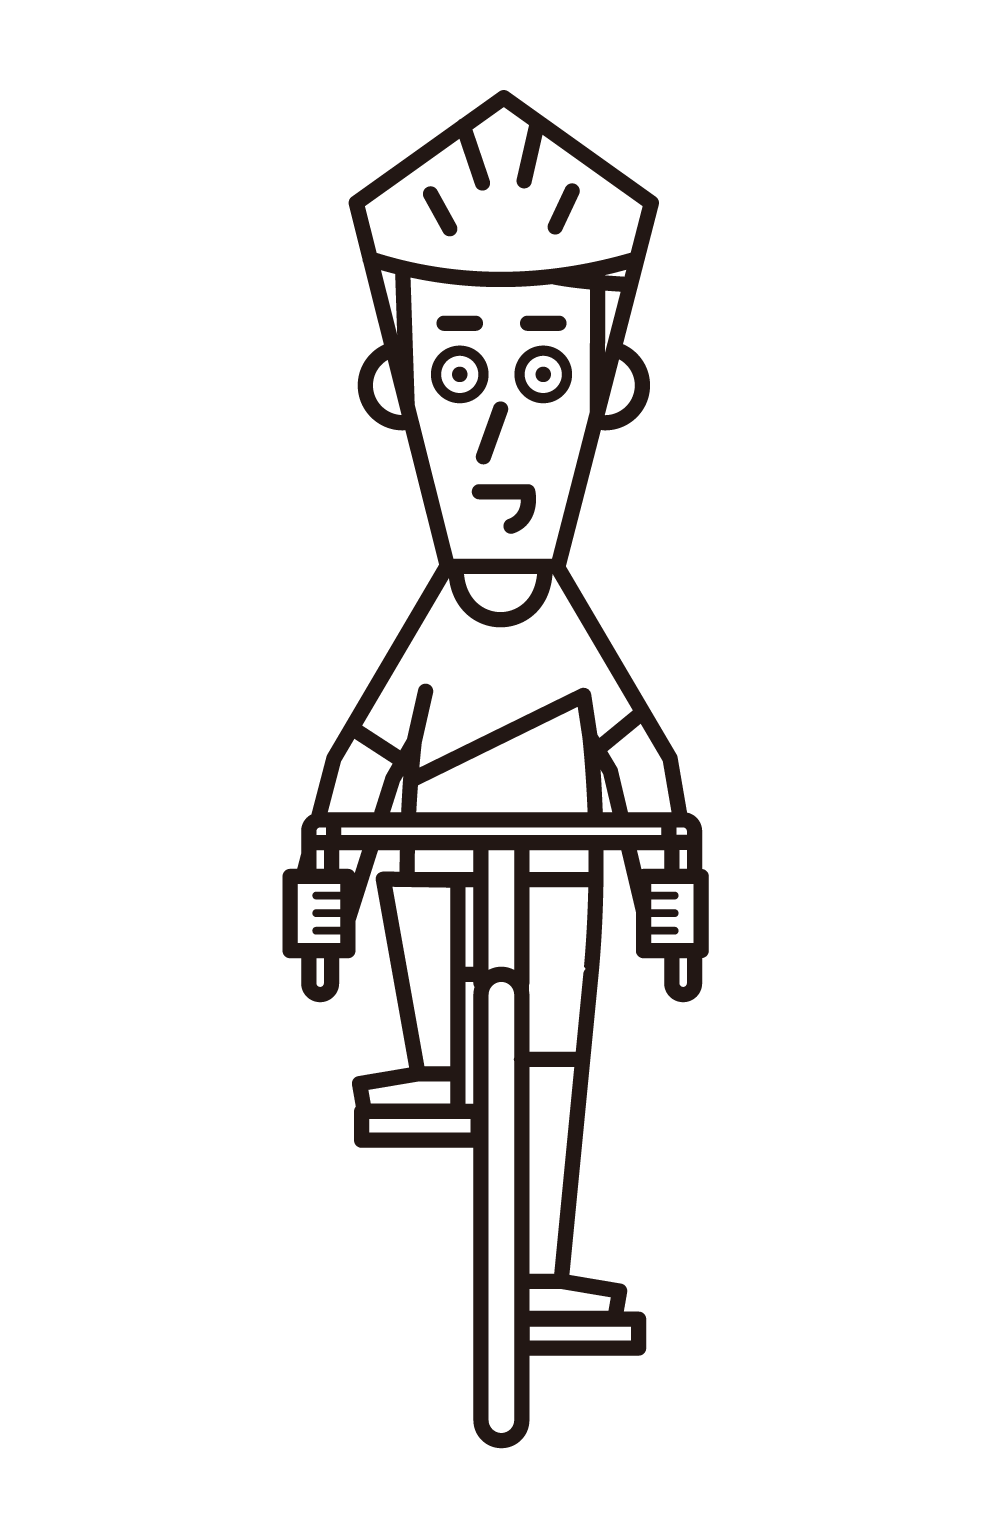 騎公路自行車的人（男性）的插圖